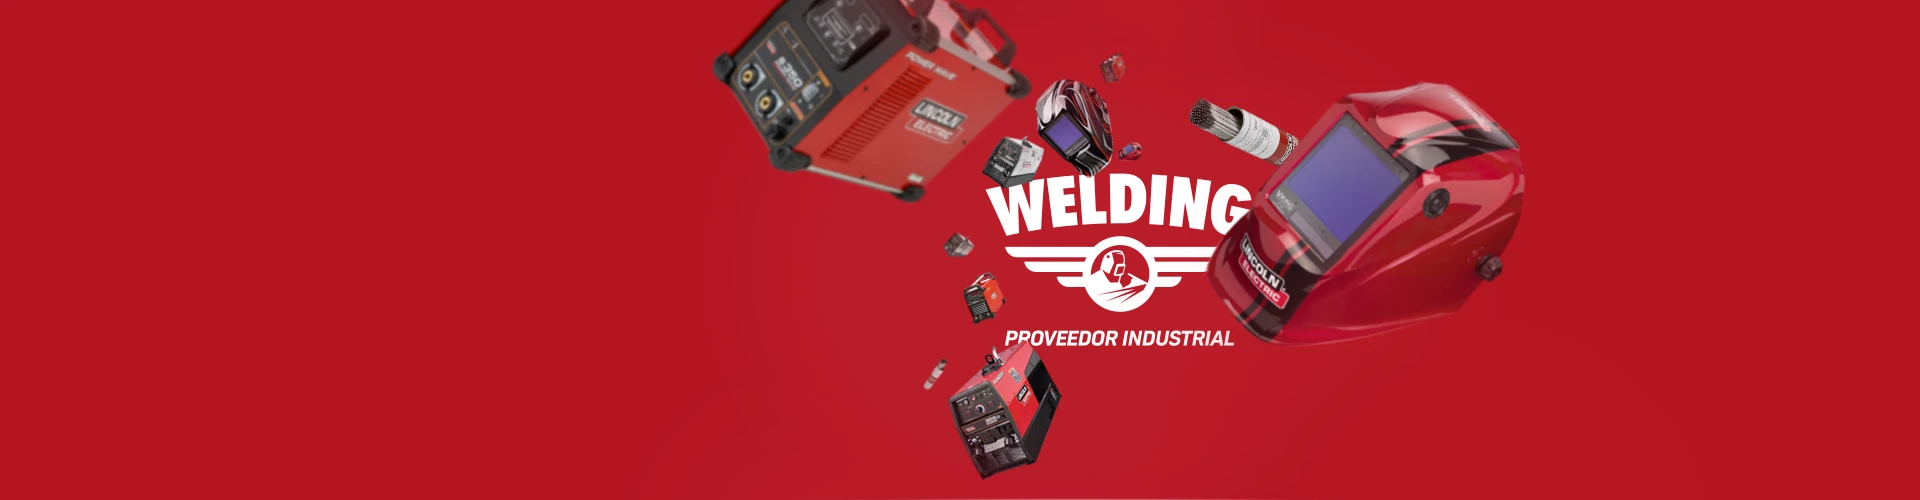 Portada del proyecto de Diseño de Identidad Corporativa y Branding: Welding, proveedor de insumos industriales de soldadura.